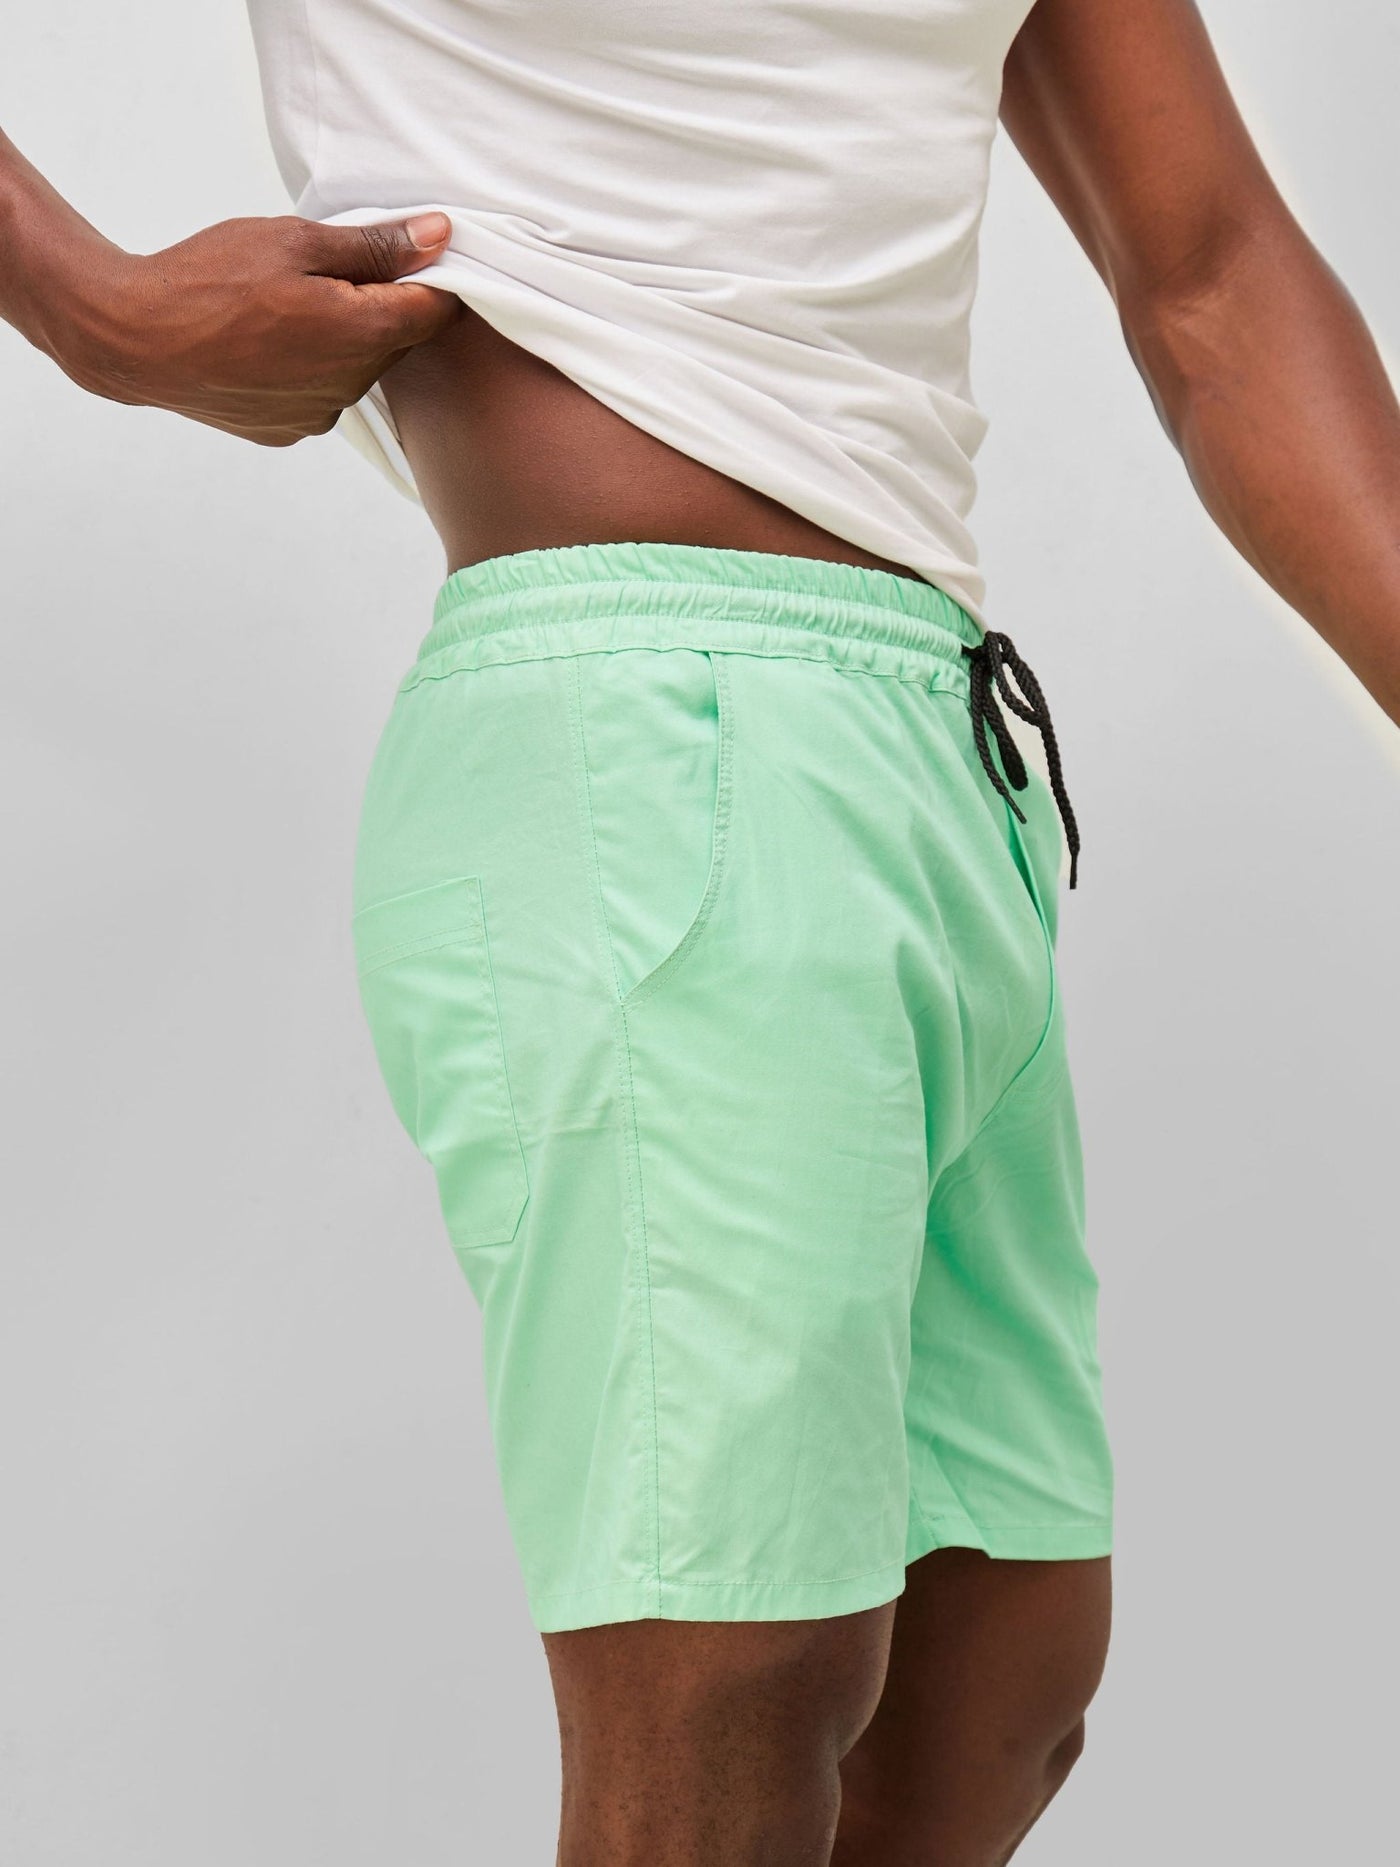 Zetu Men's Beach Shorts - Mint Green - Shopzetu